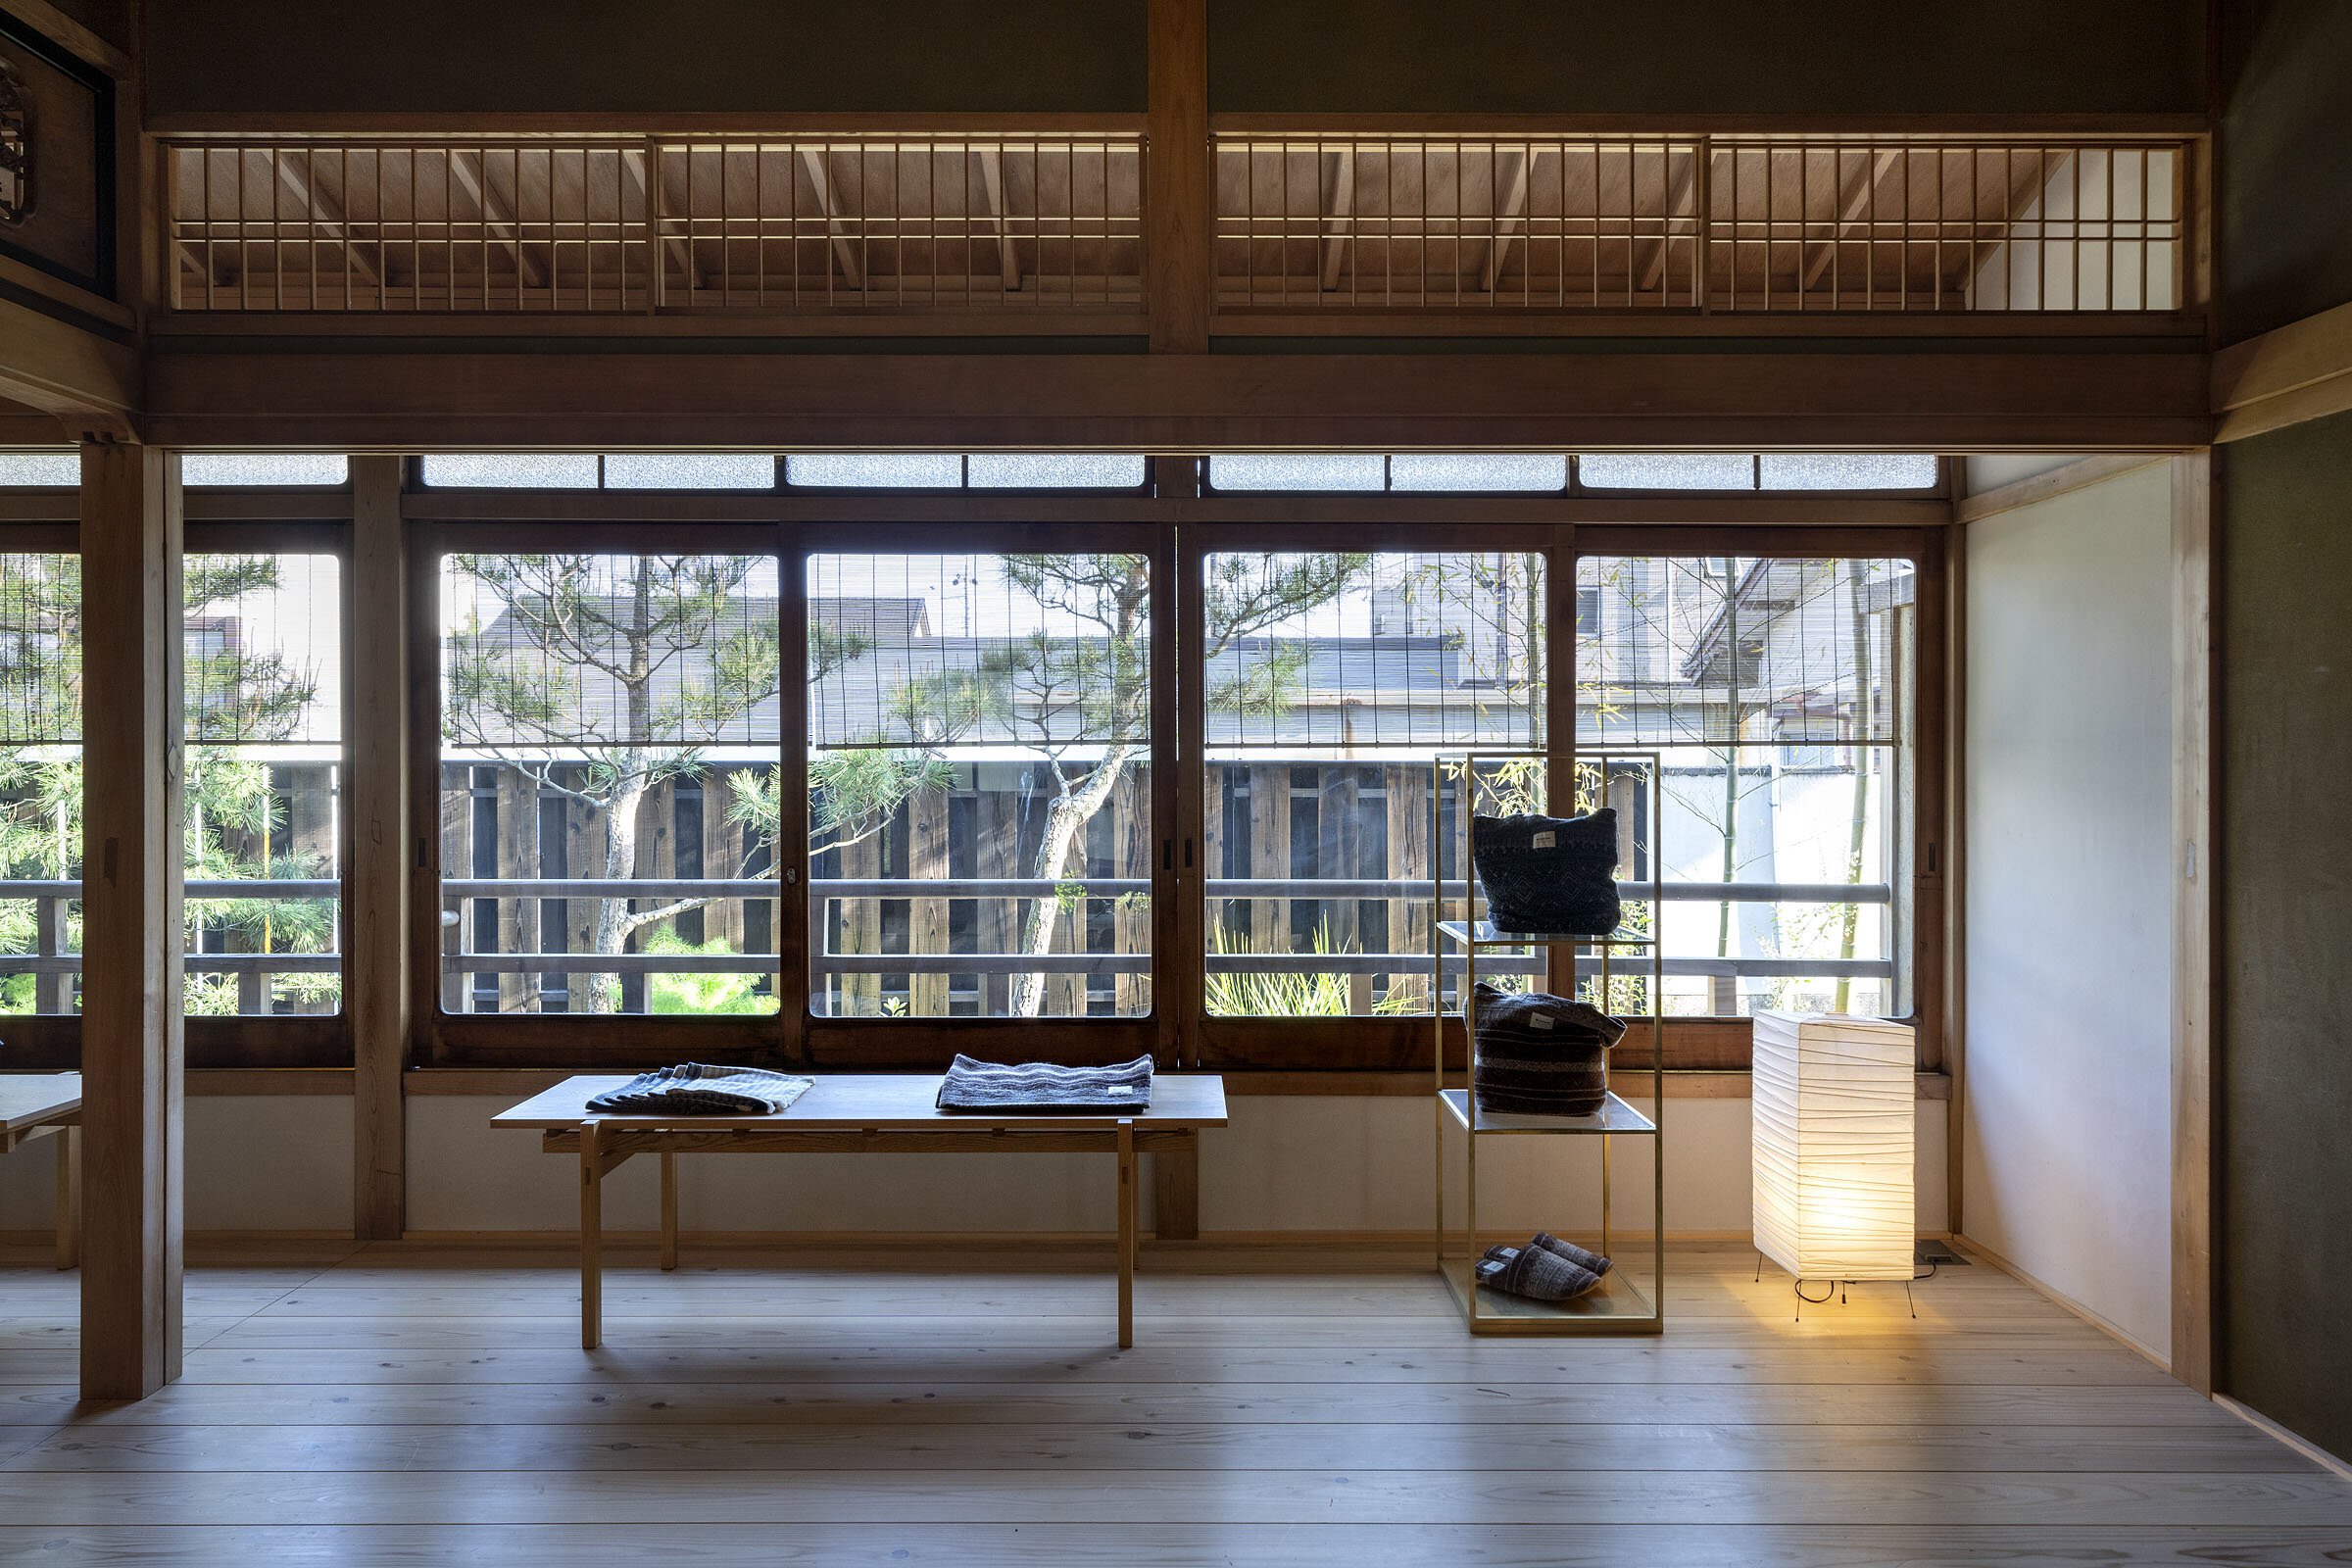  cafe co.の森井良幸がデザインしたスノーピークランドステーション京都嵐山の店内 